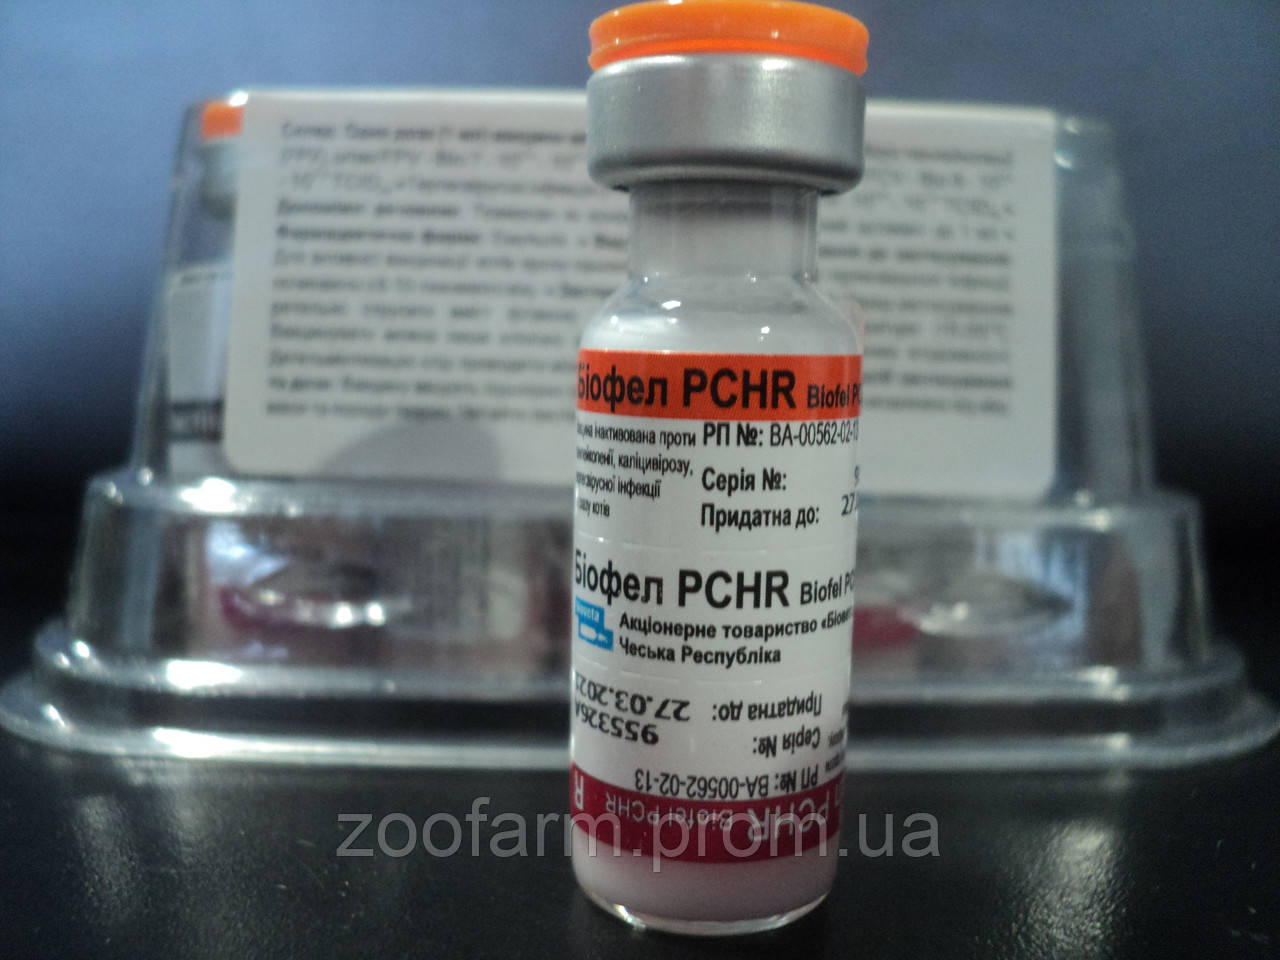 Вакцина pchr для кошек